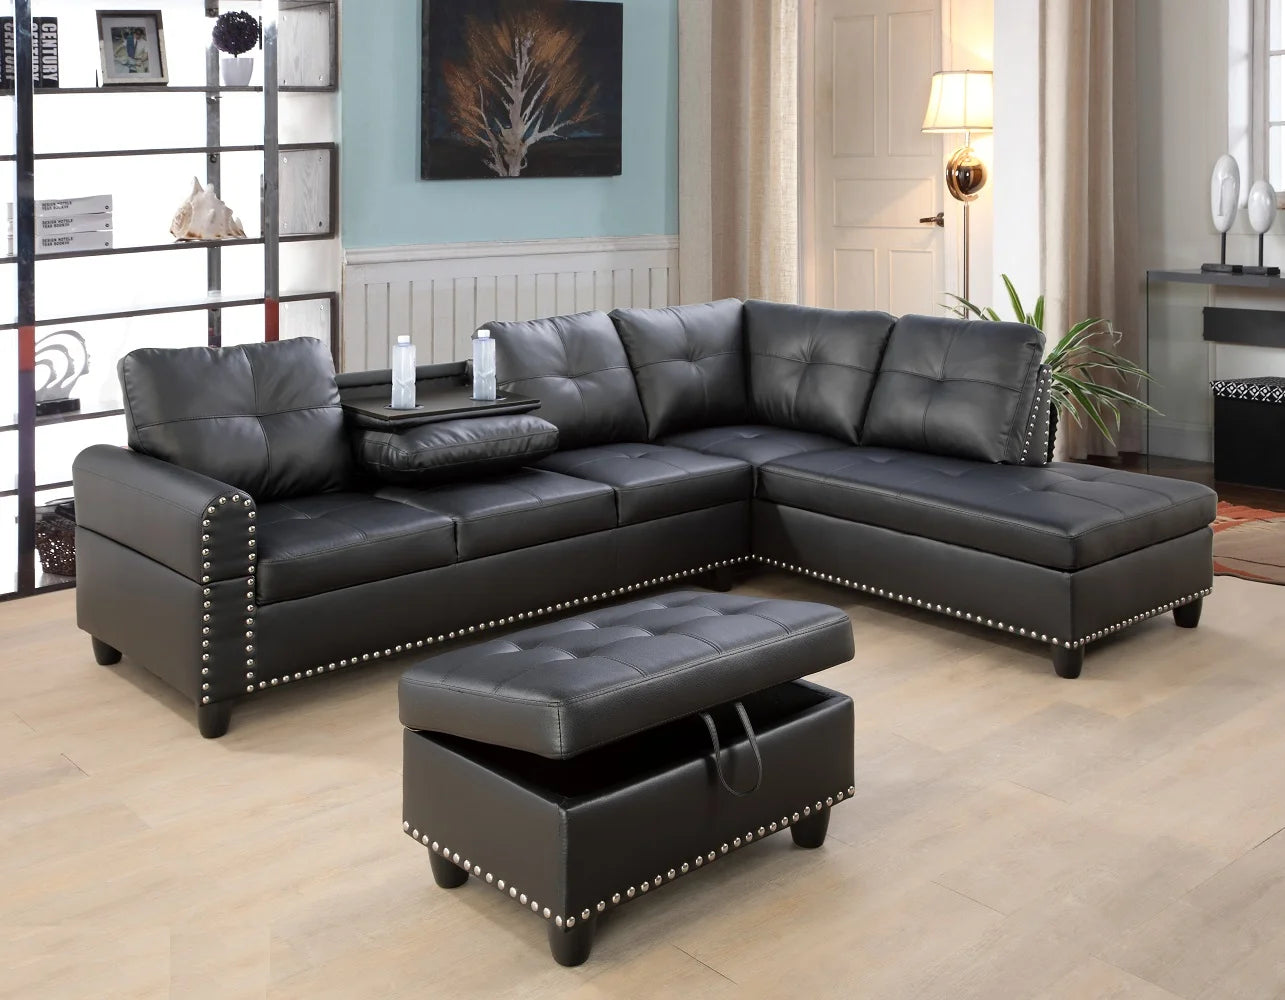 Sectional Sofa with Storage Ottoman - ZARA